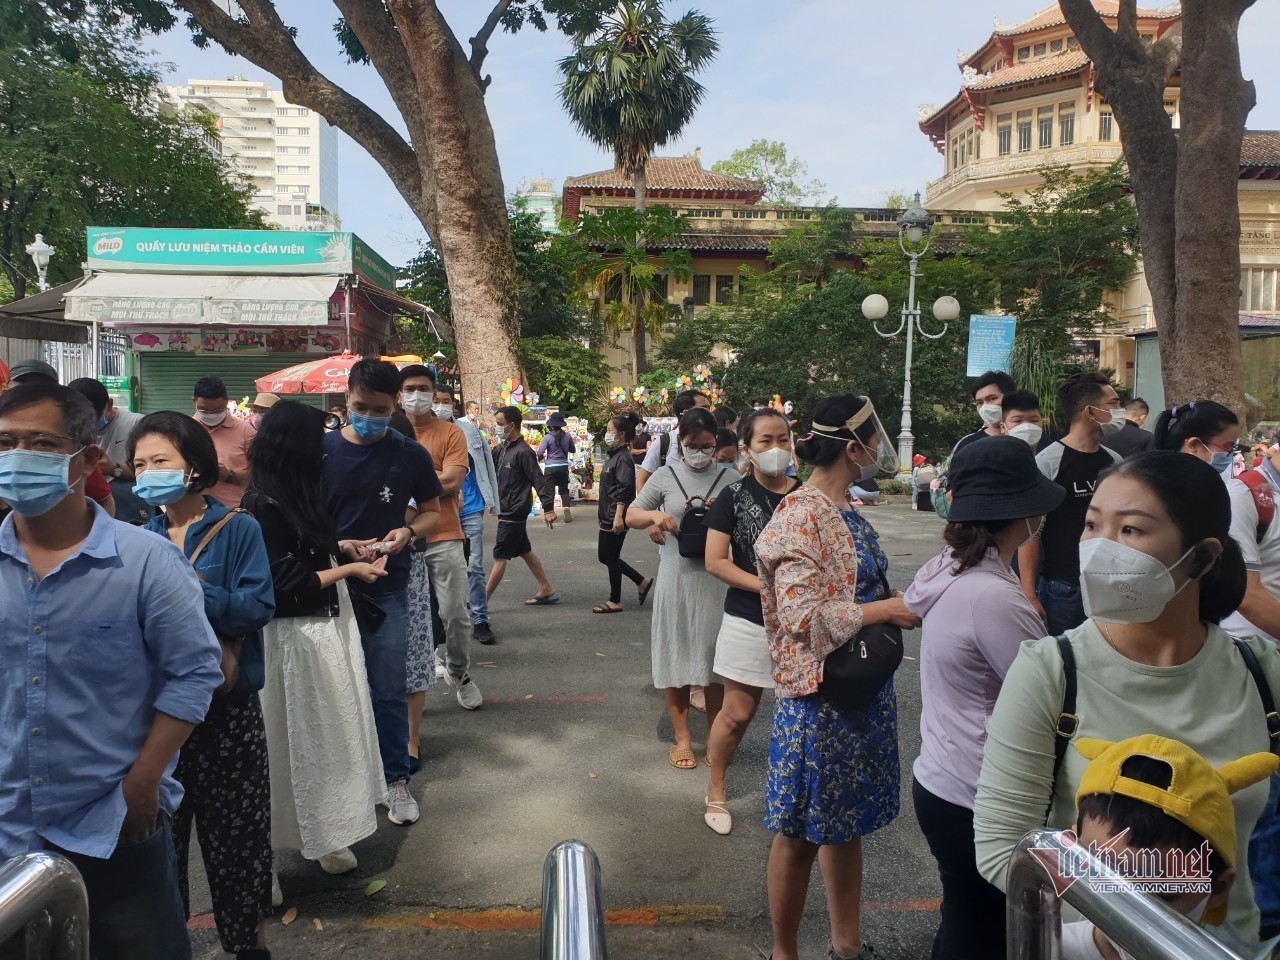 Thảo Cầm Viên Sài Gòn bất ngờ đón hàng nghìn khách vui chơi ngày cuối tuần - Ảnh 4.